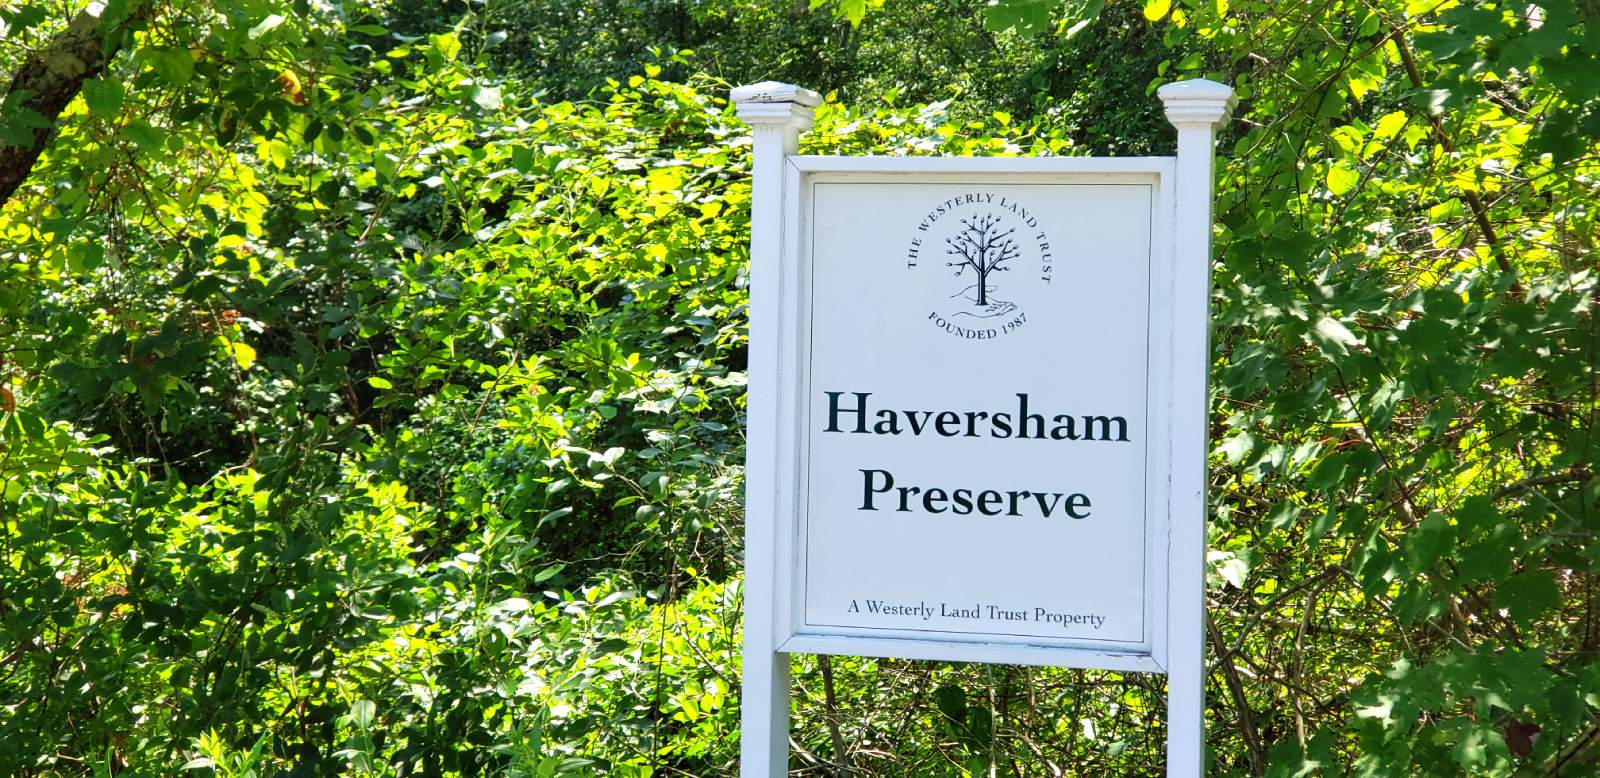 Haversham Preserve